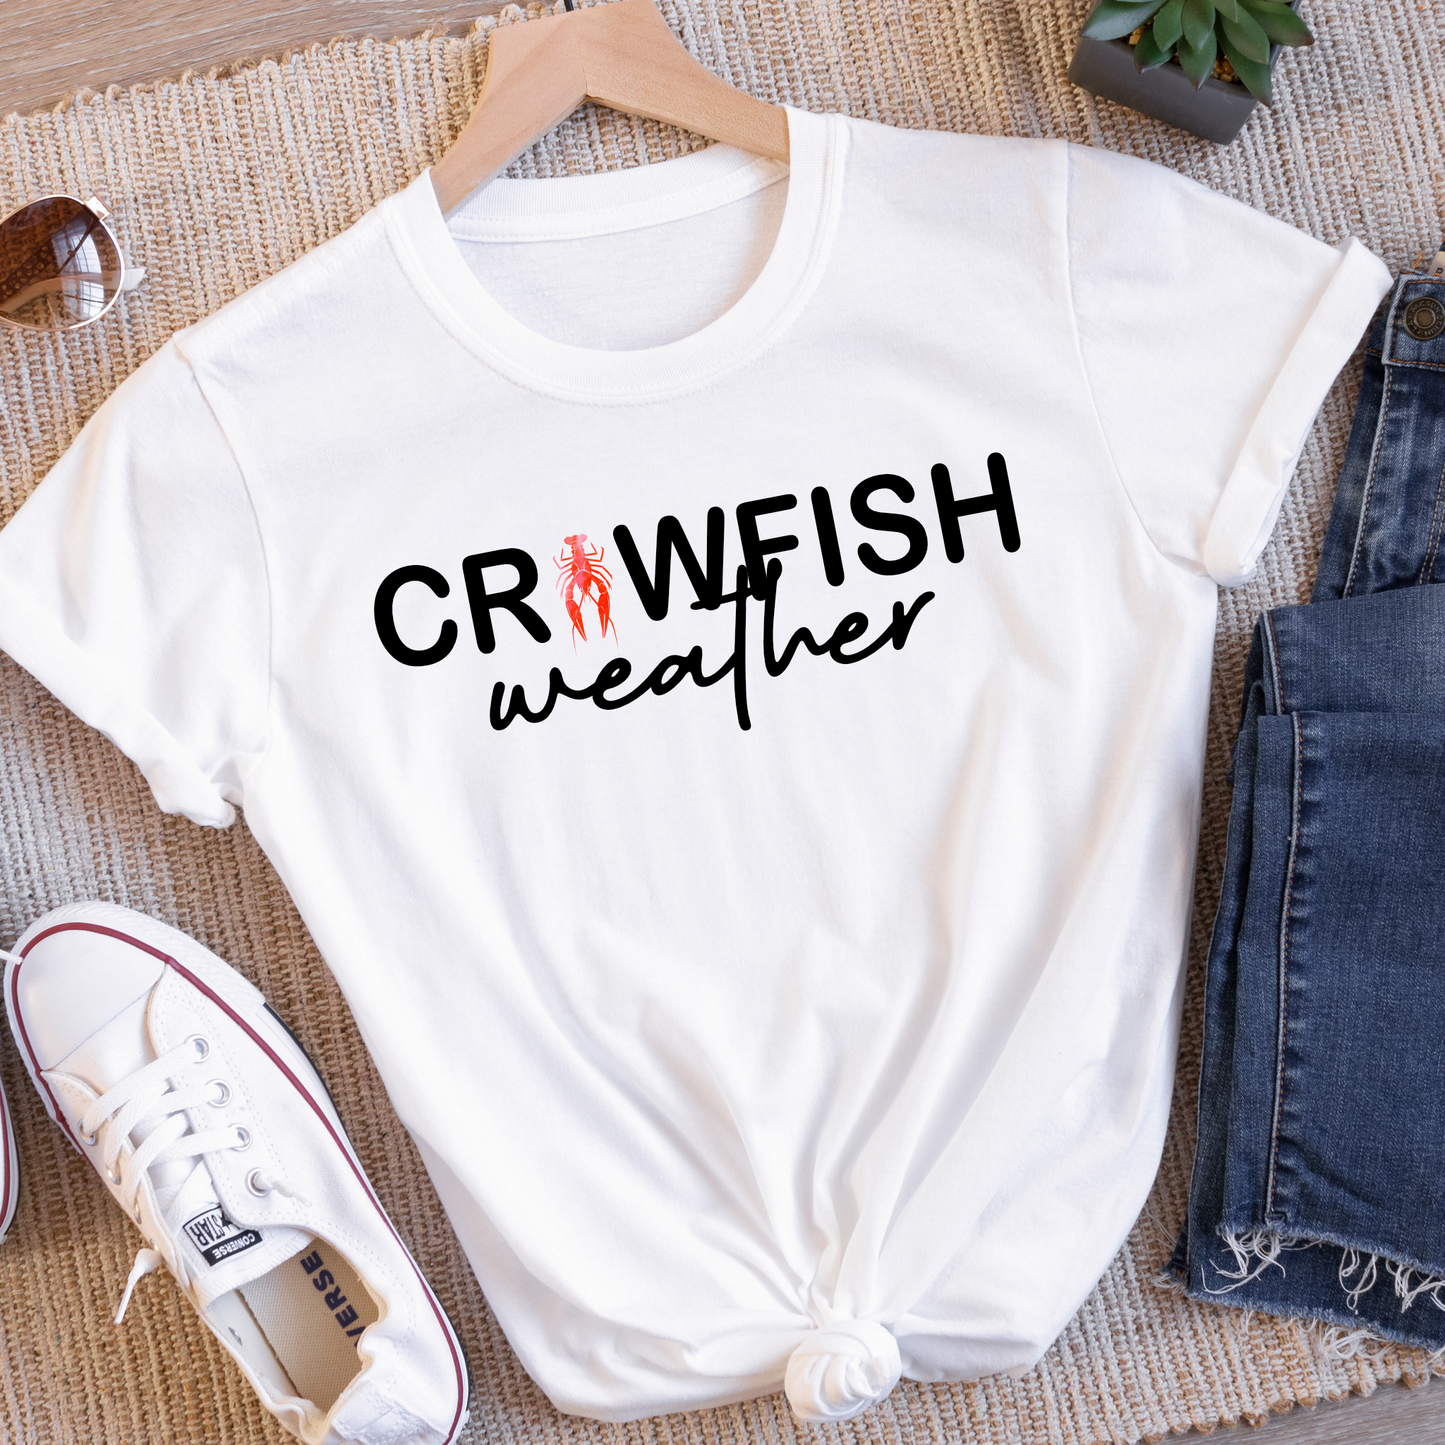 Crawfish Weather Tee